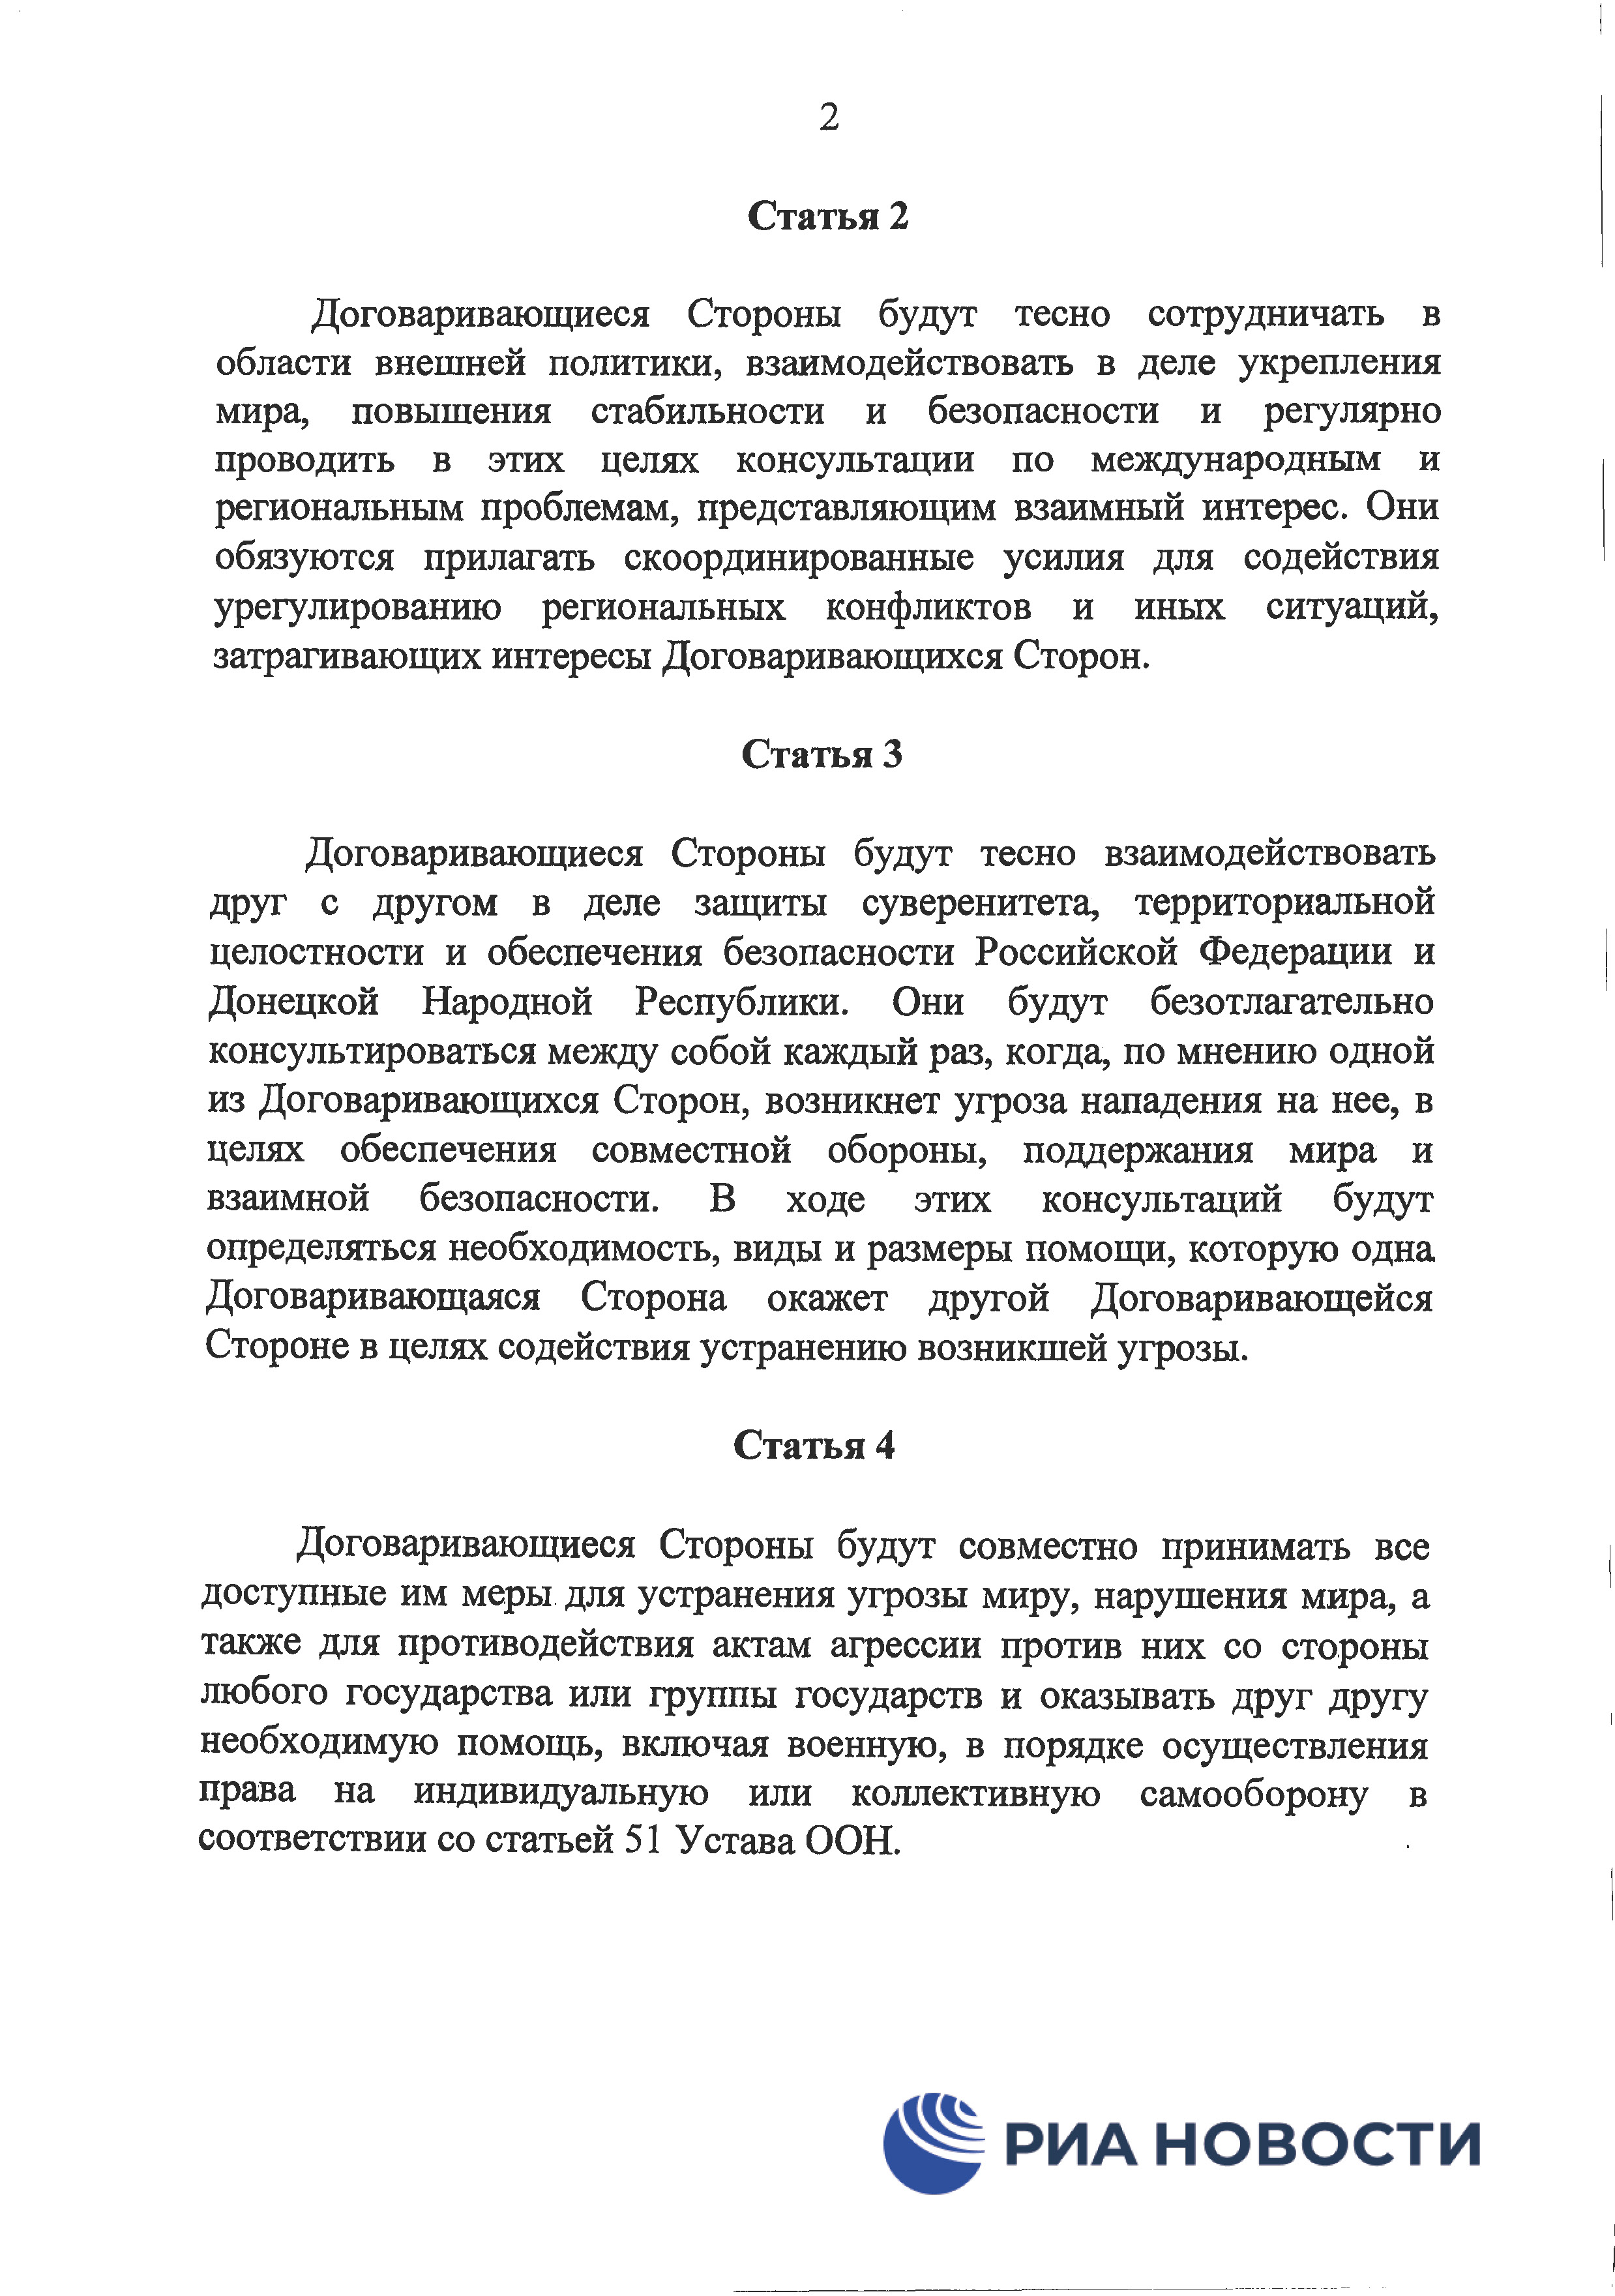 Договор о дружбе России с ДНР и ЛНР - страница 5